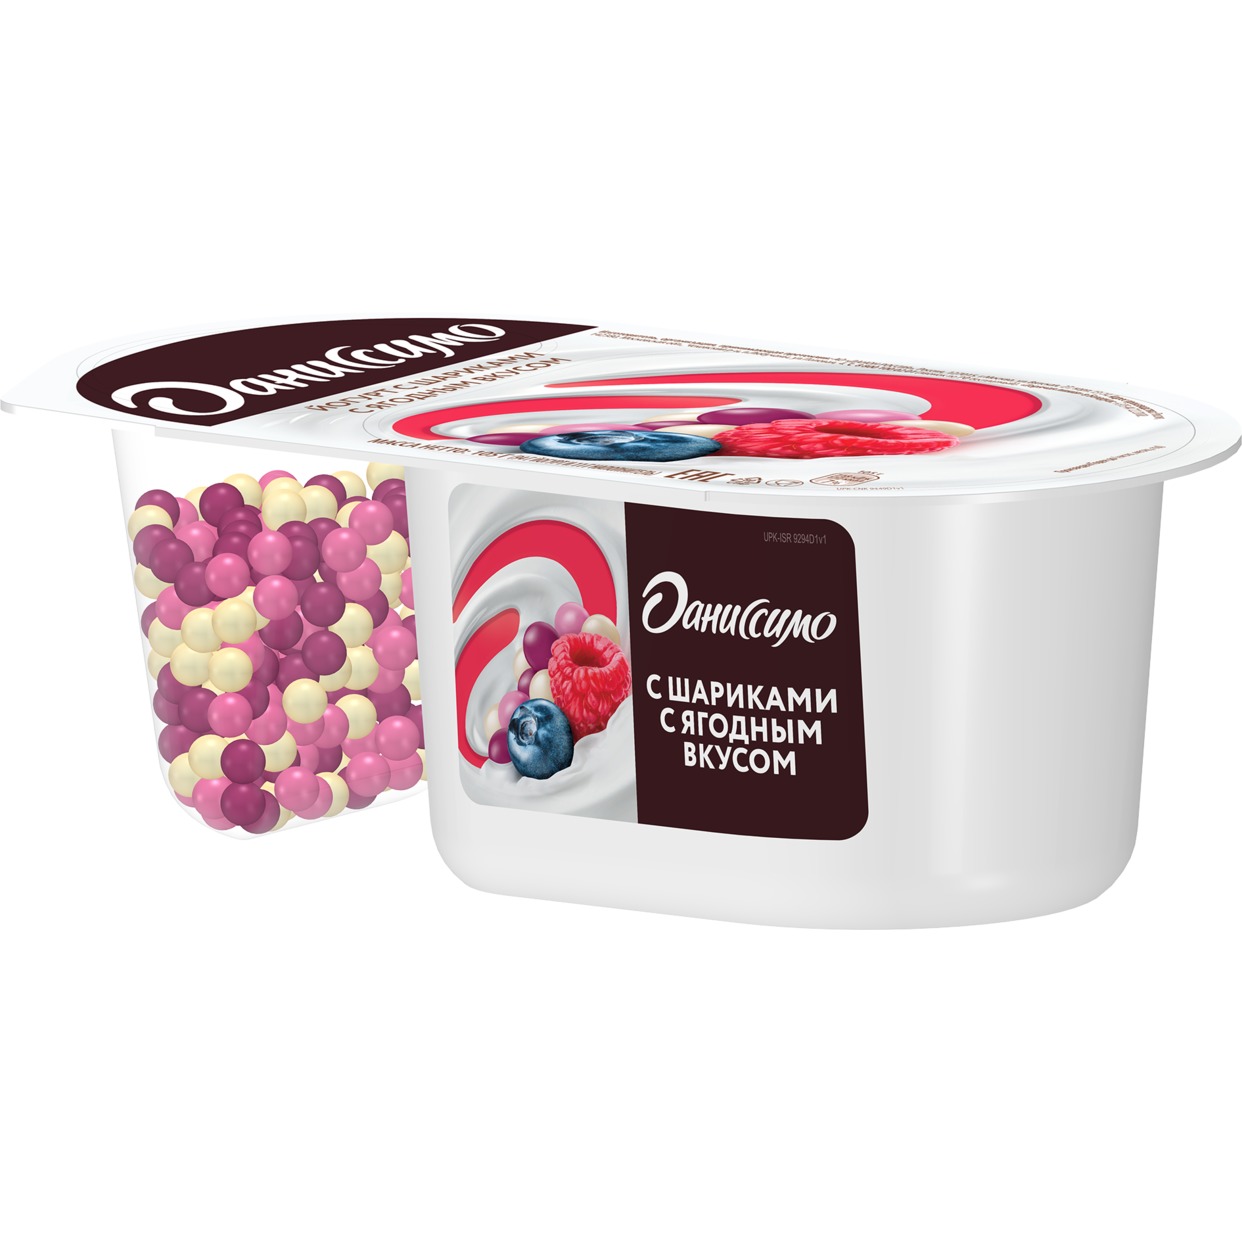 Йогурт "Даниссимо" Фантазия с хрустящими шариками с ягодным вкусом 6.9% 105г по акции в Пятерочке